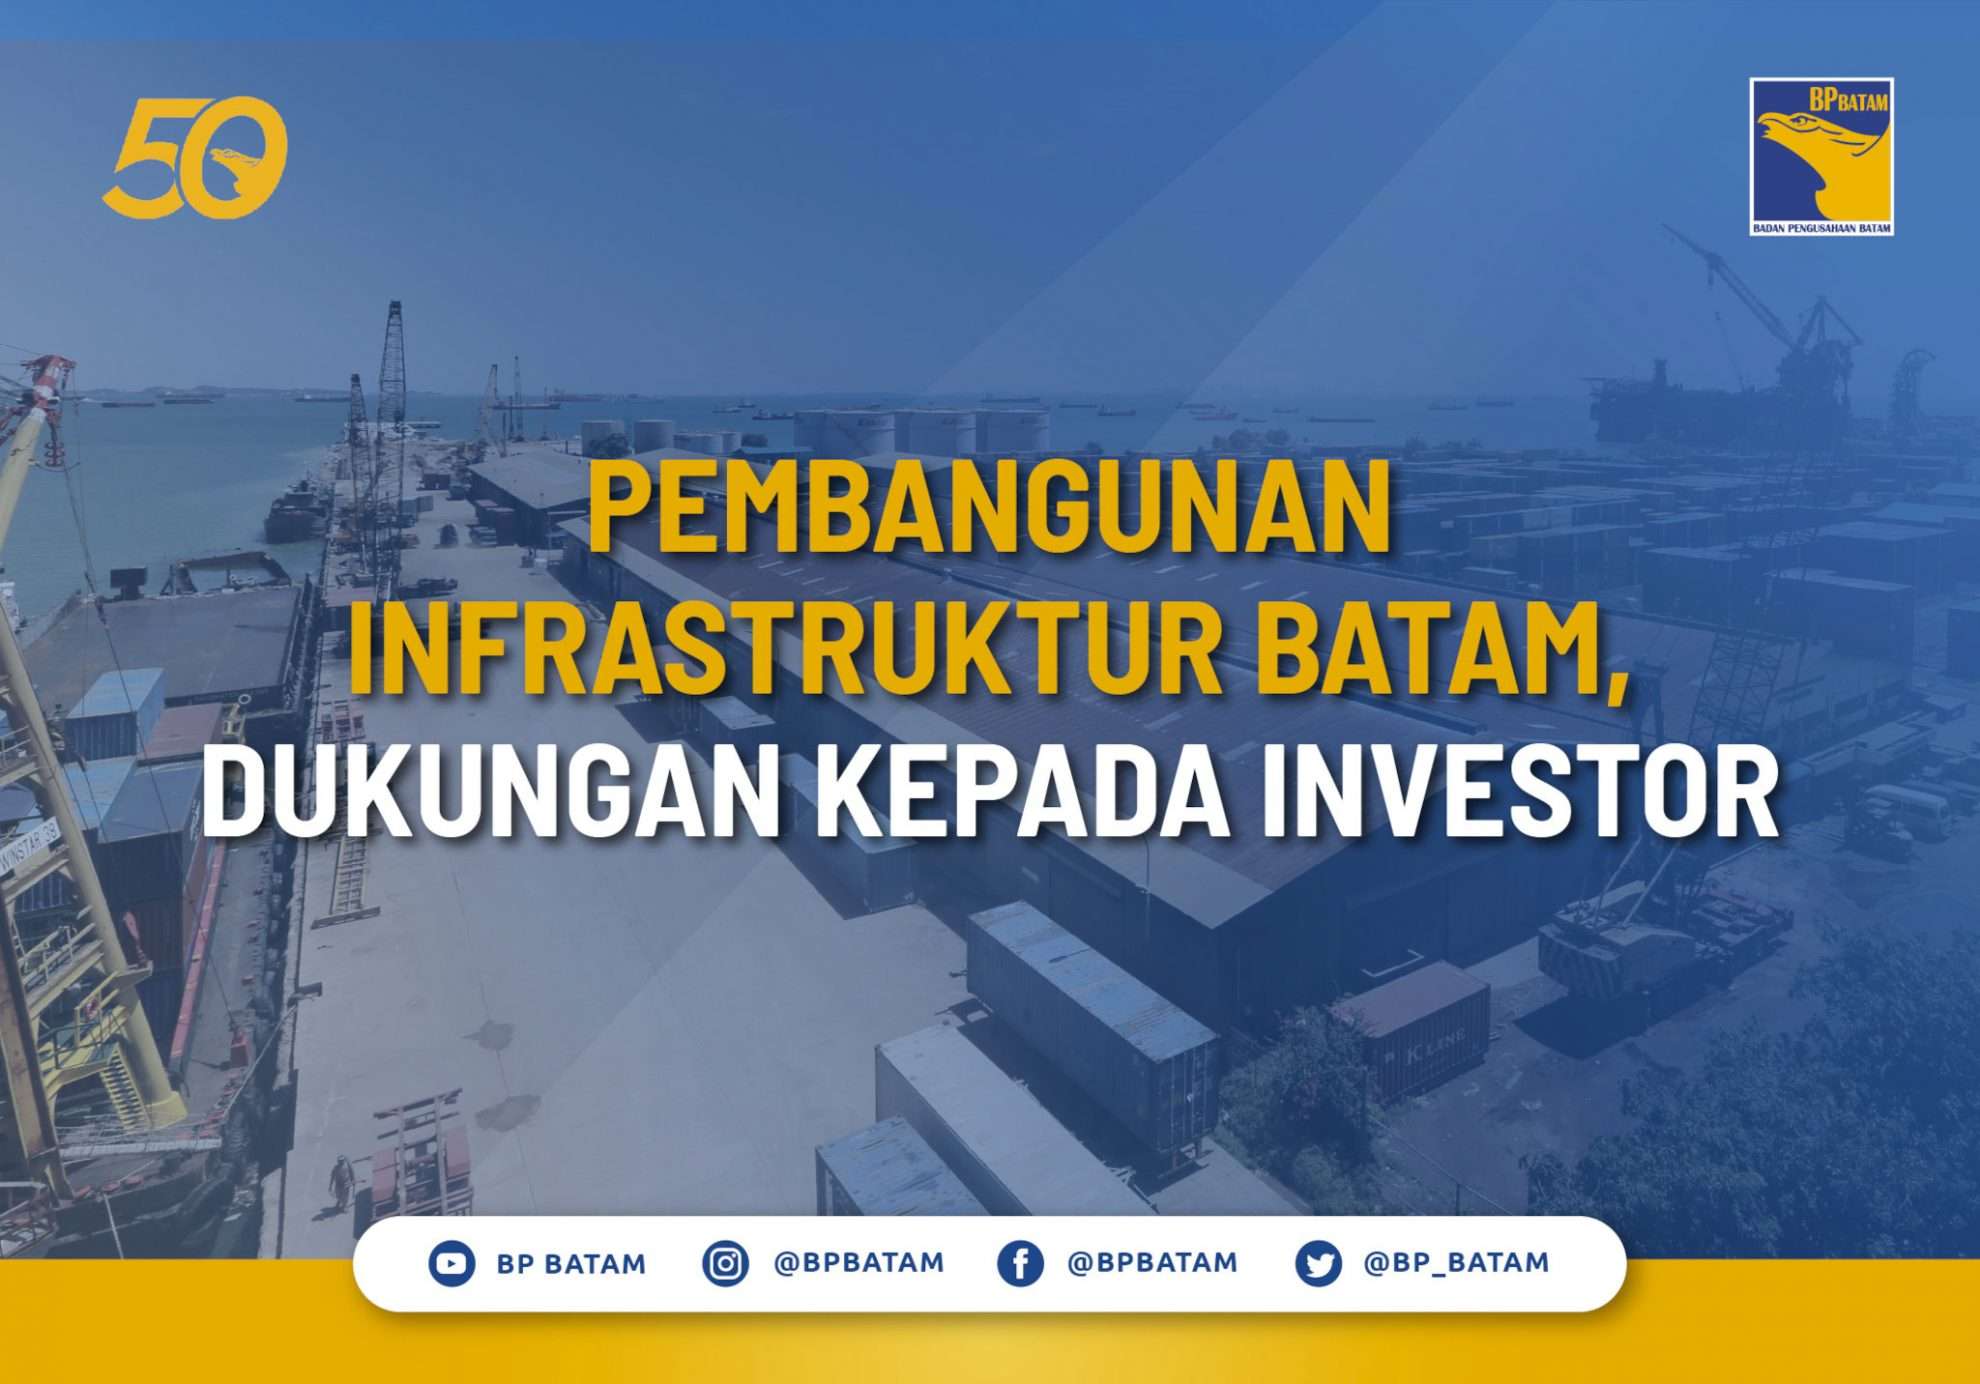 Pembangunan Infrastruktur Batam, Dukungan kepada Investor